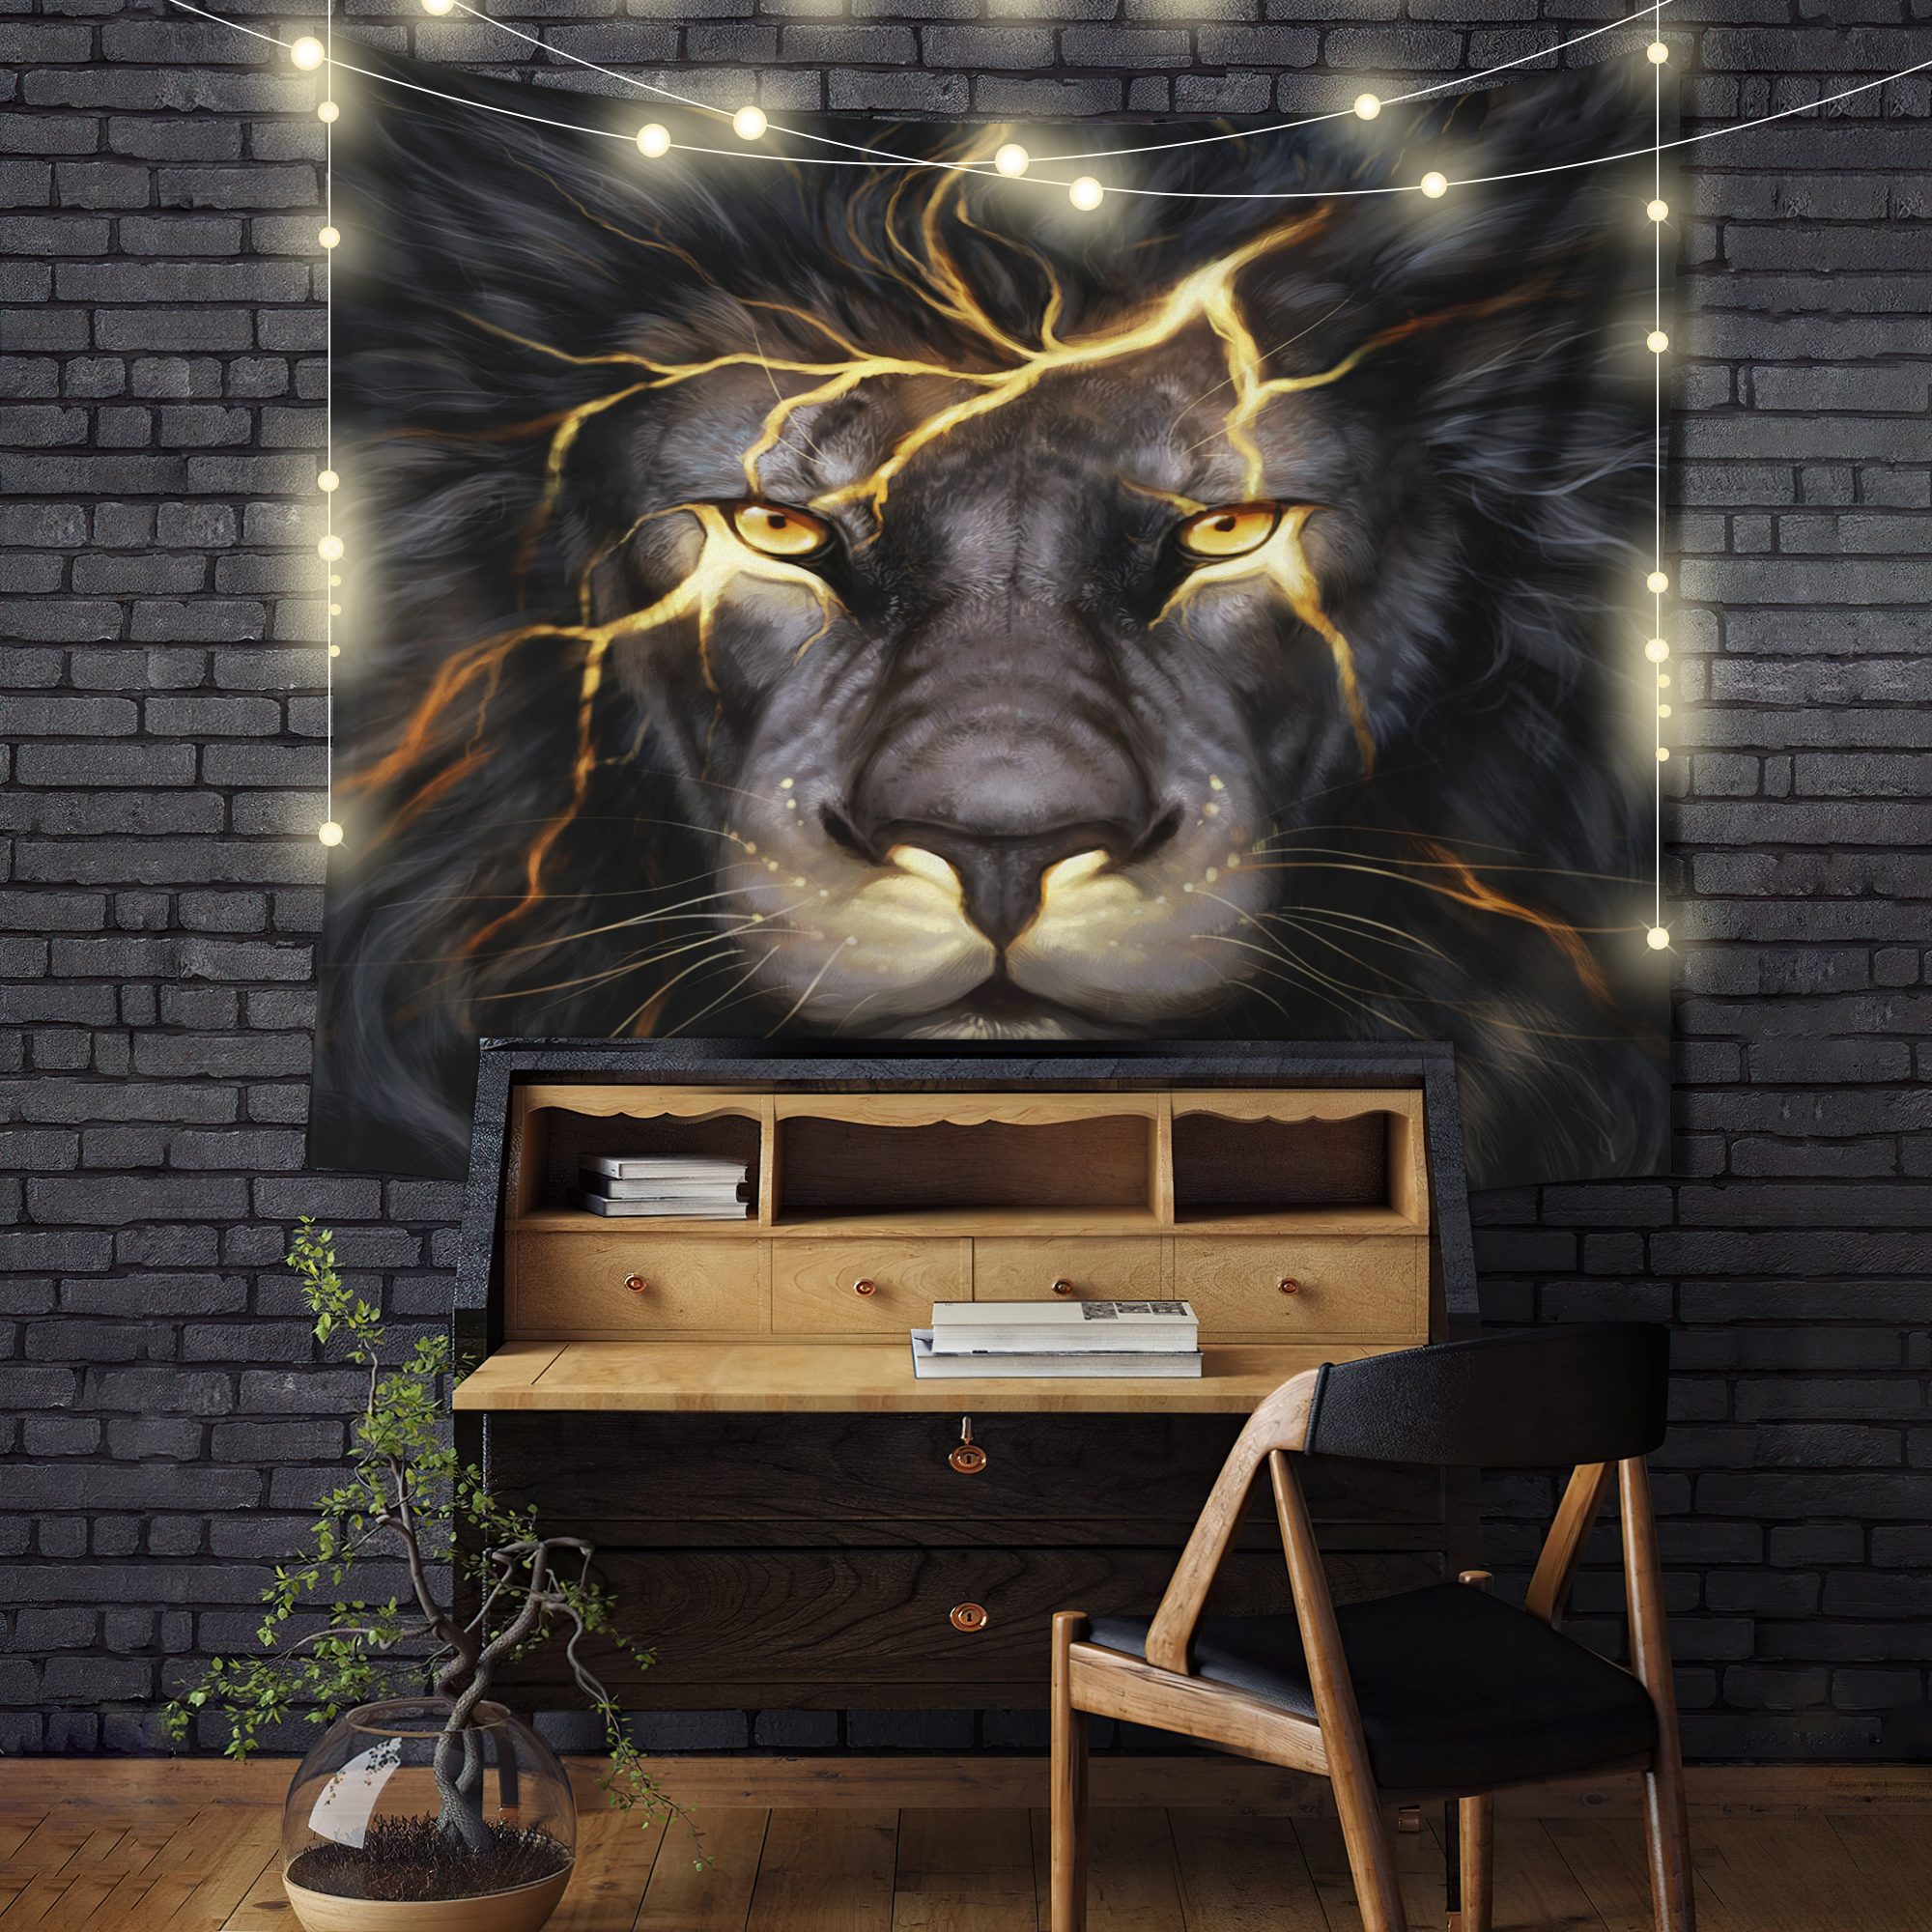 Lion Thunder Tapestry Room Decor